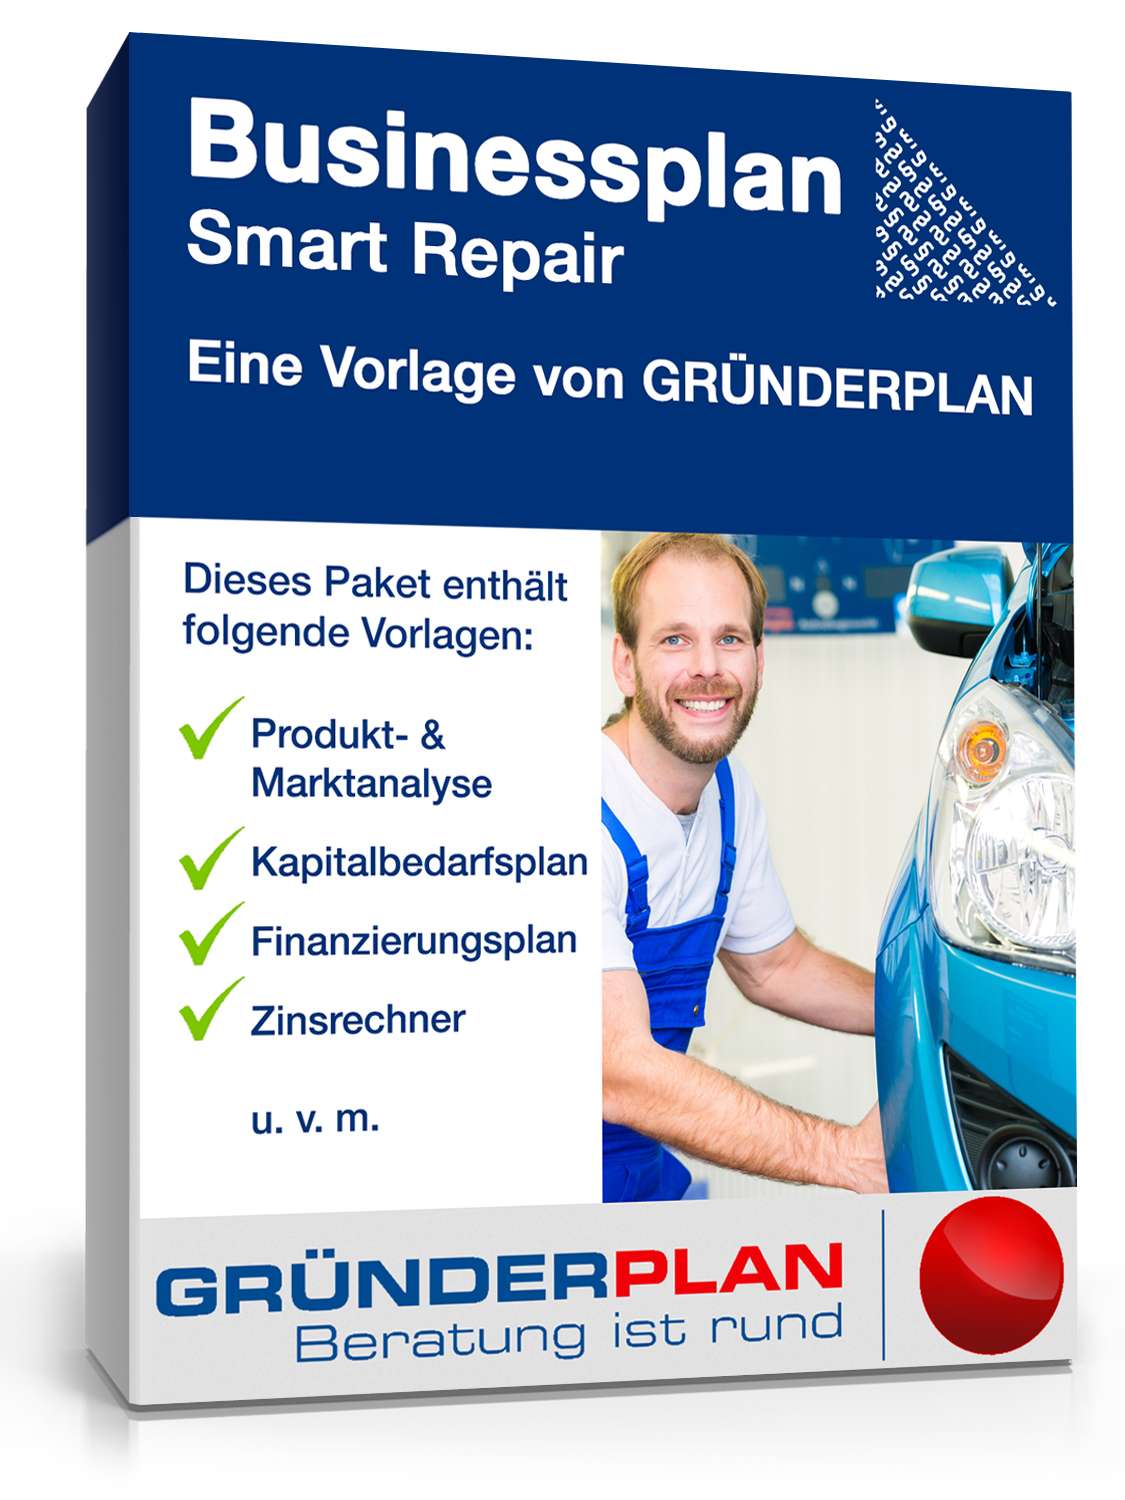 Hauptbild des Produkts: Businessplan Smart Repair von Gründerplan